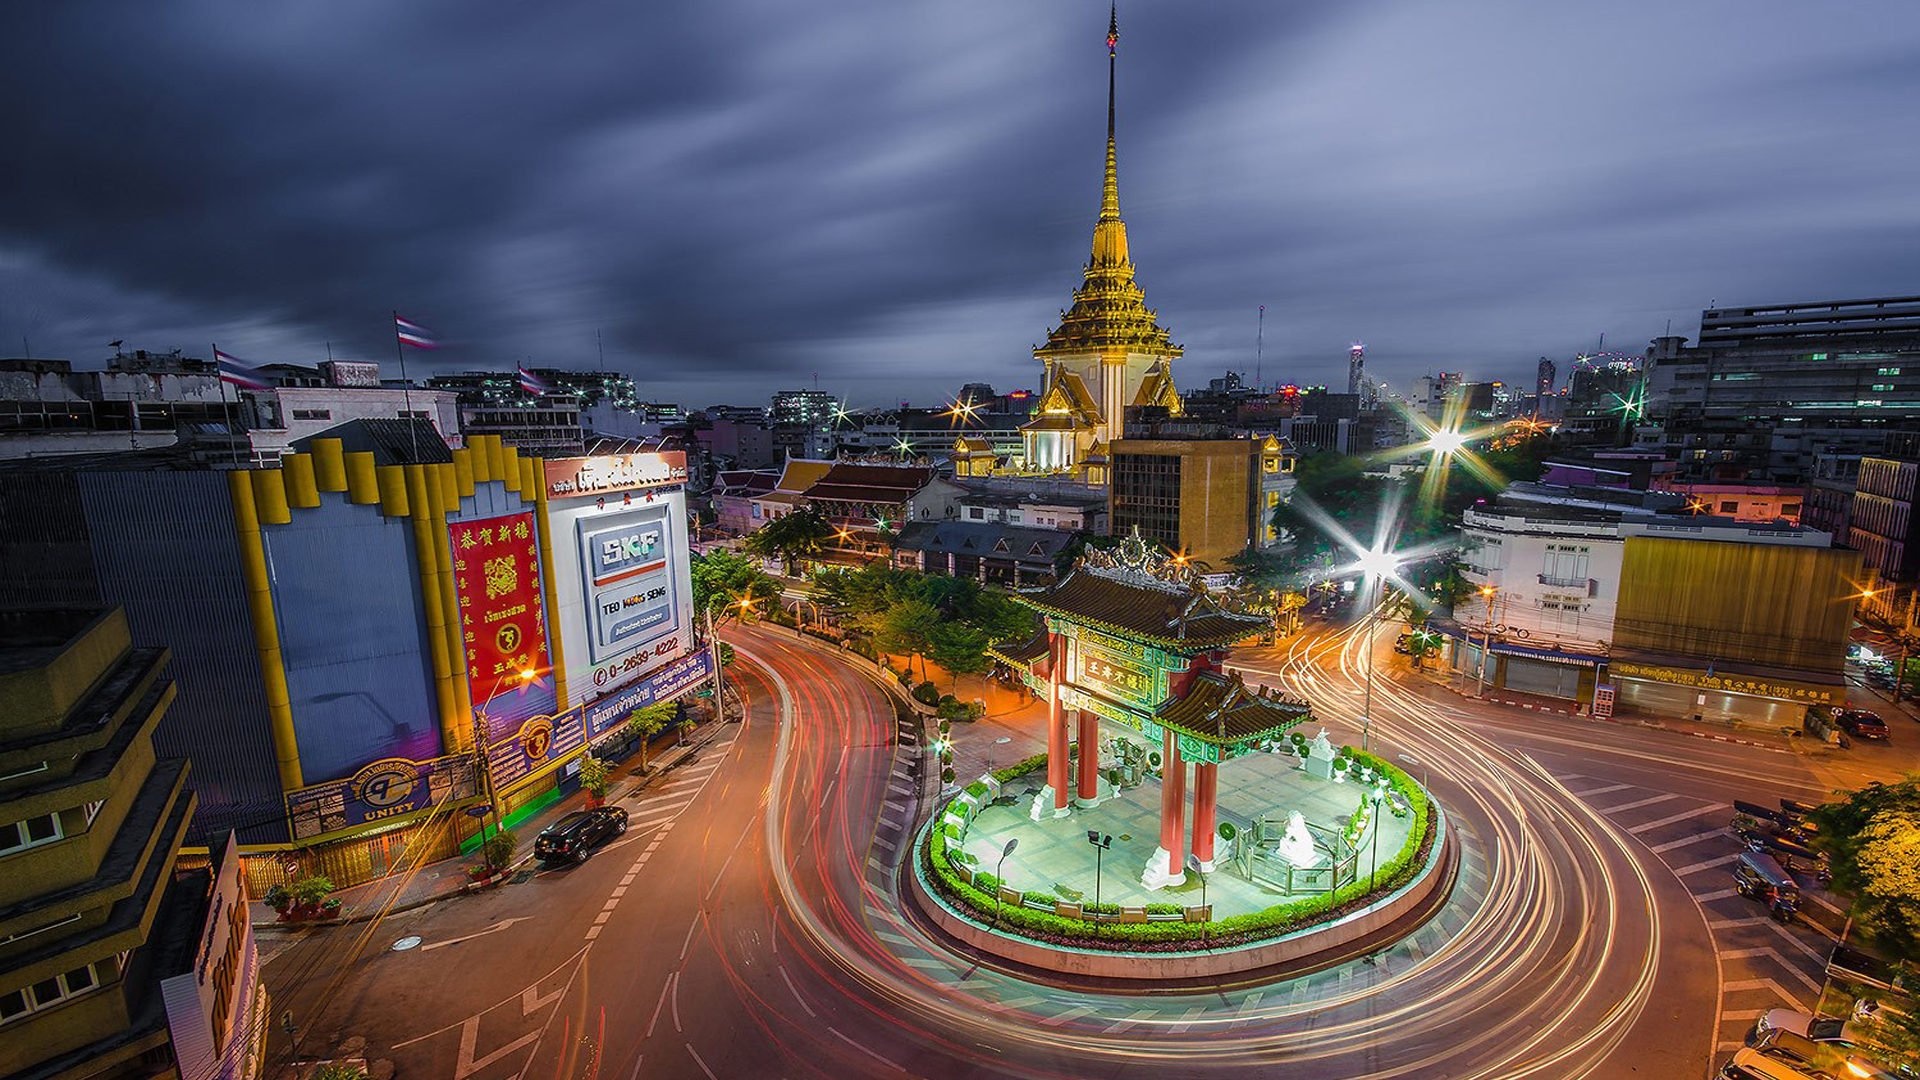 Bangkok: Odeon Circle, The intersection of Yaowarat, Charoen Krung, and Tri Mit or Mittaphap Thai-China roads in Samphanthawong district. 1920x1080 Full HD Wallpaper.